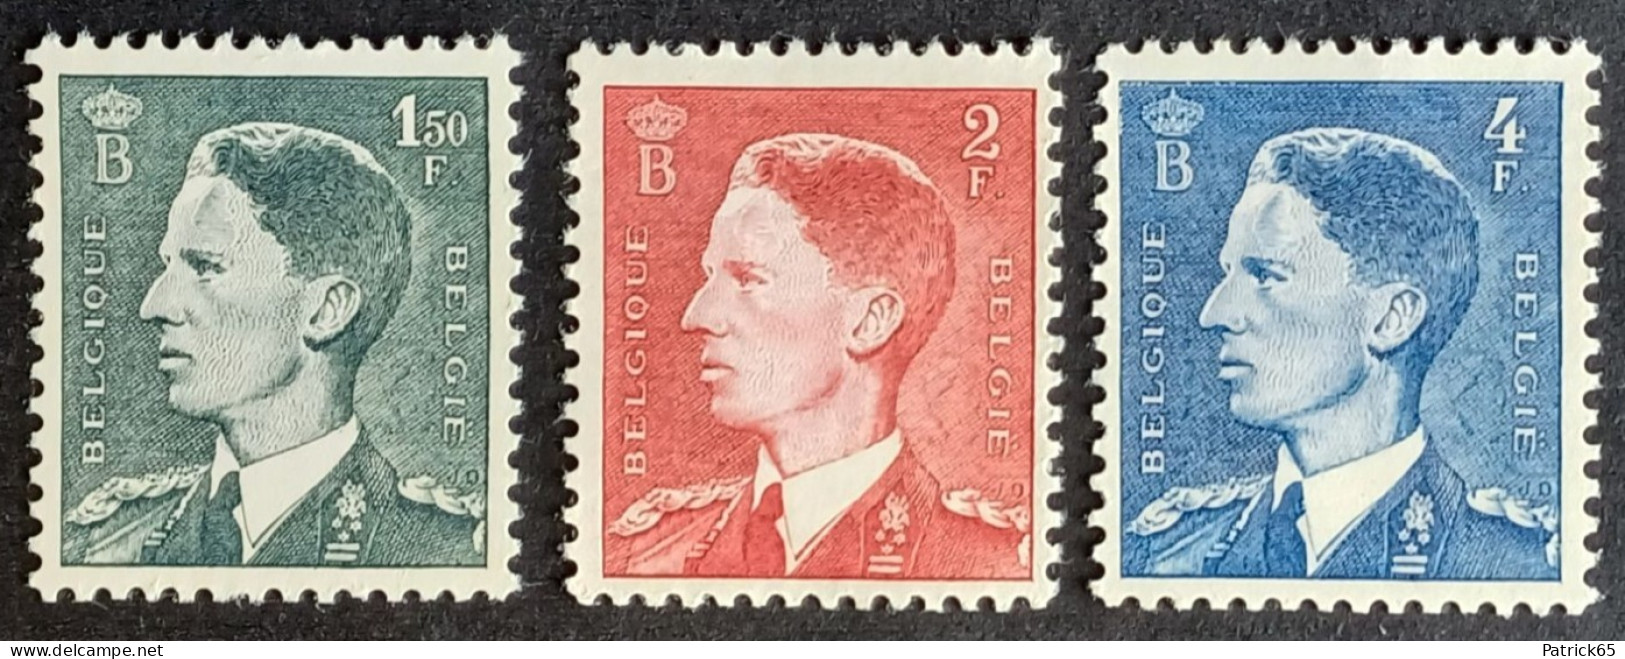 Belgie 1953 K.Boudewijn Obp-909/911 MNH-Postfris - Unused Stamps